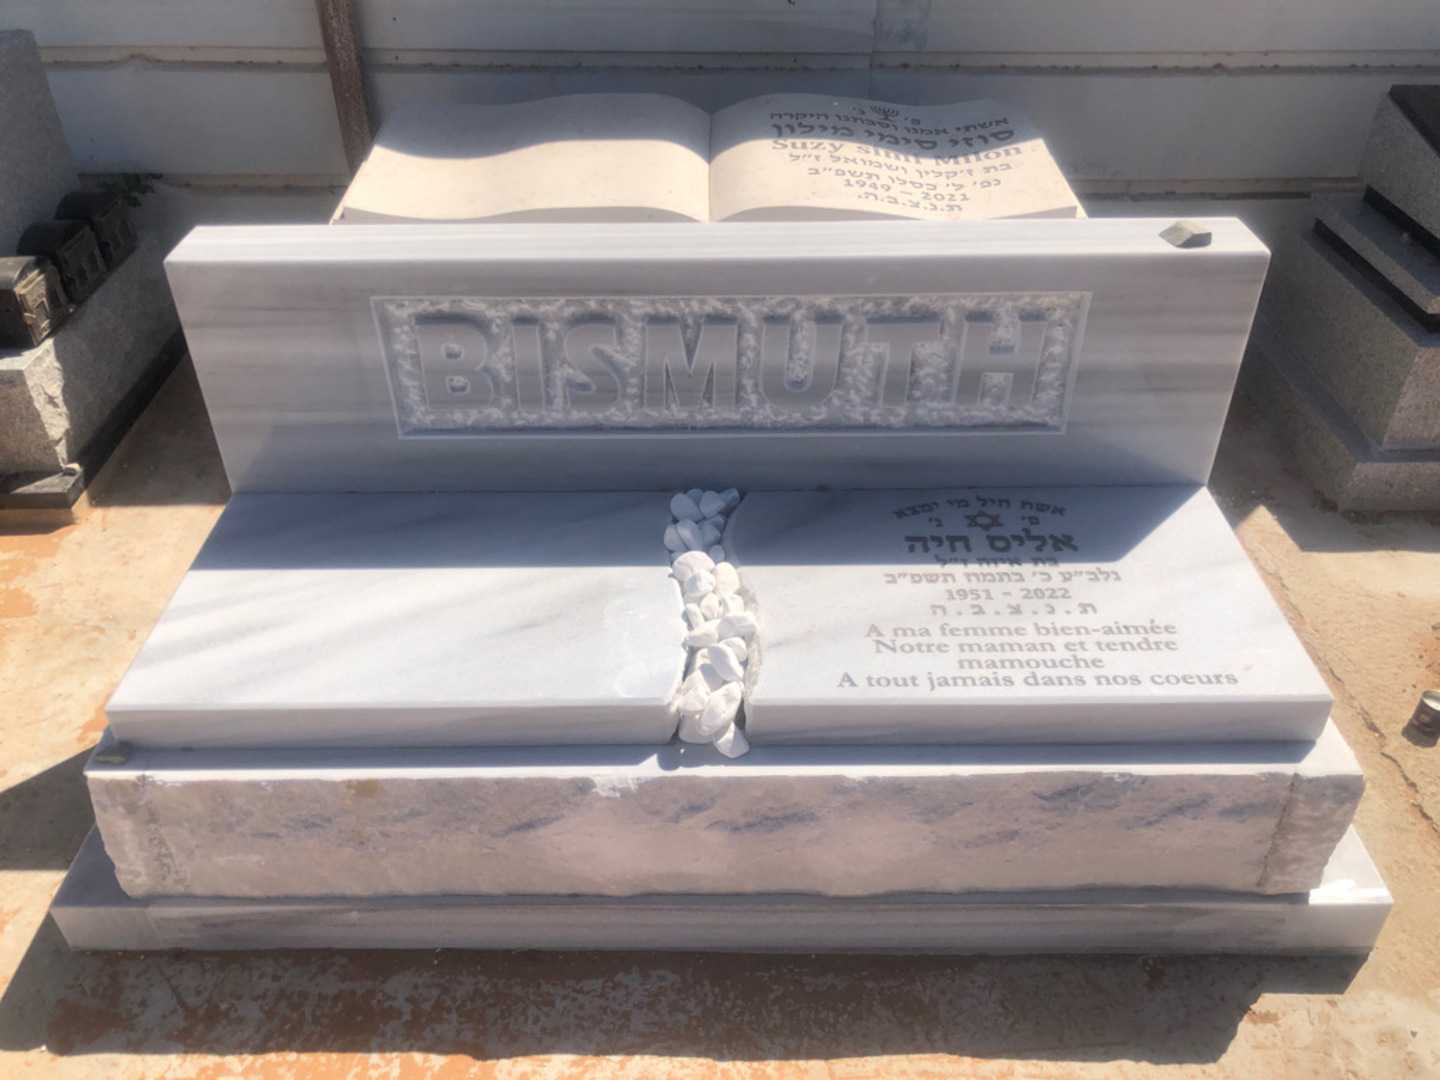 קברו של אליס חיה "Bismuth" ביסמוט. תמונה 2